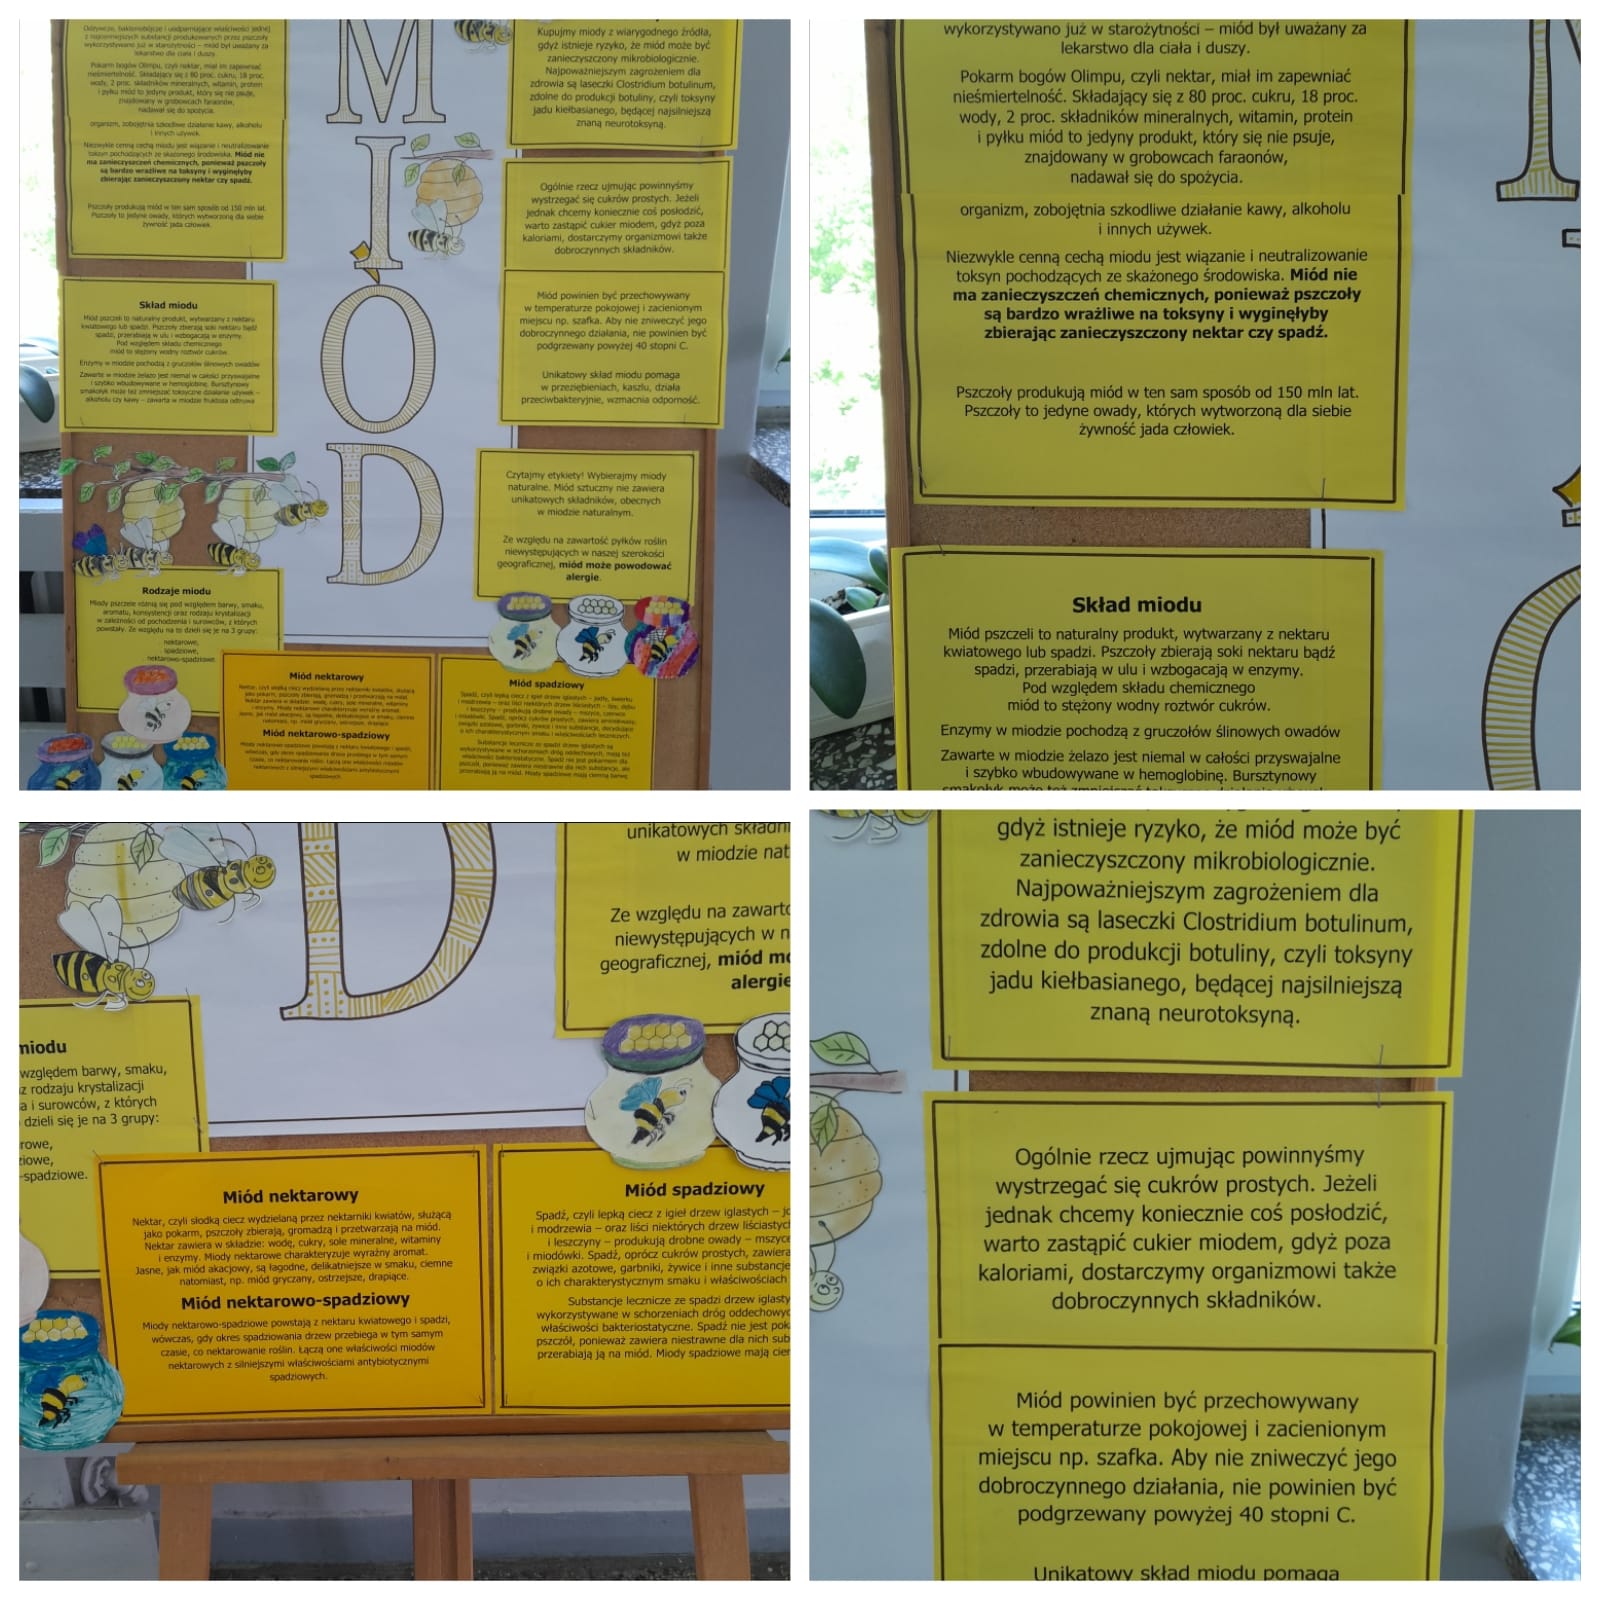 przygotowany przez uczniów plakat informacyjnym w zaletach miodu - duża tablica z żółtymi kartkami, kolorowe pszczoły i dzbanki z miodem